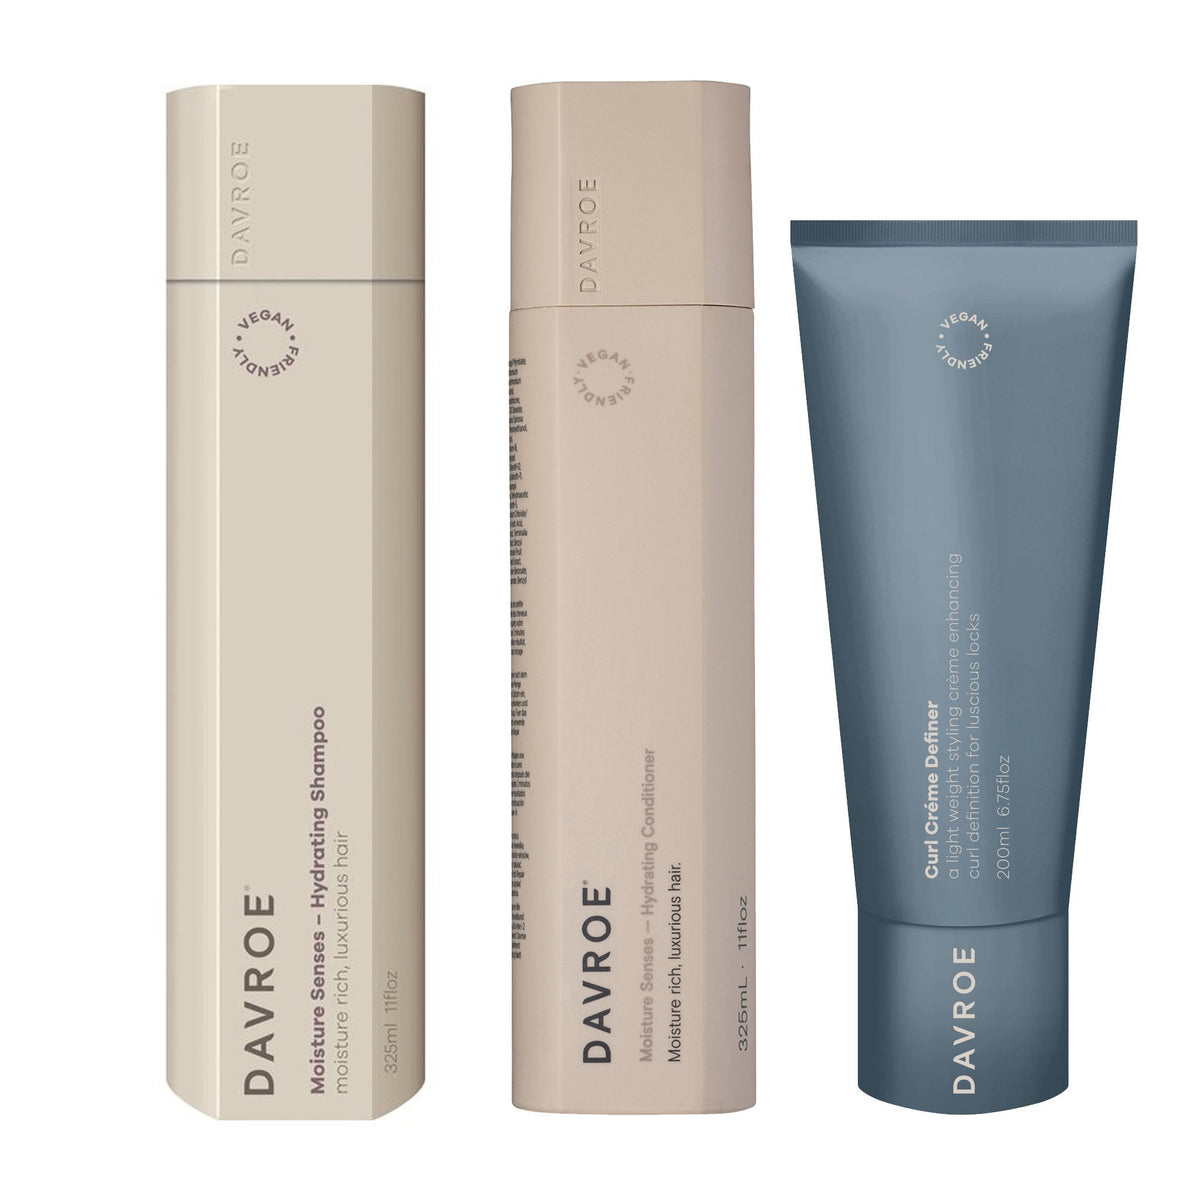 Davroe Moisture Senses Hydrating Shampoo, Conditioner and Curl Crème Definer Trio - Haircare Superstore